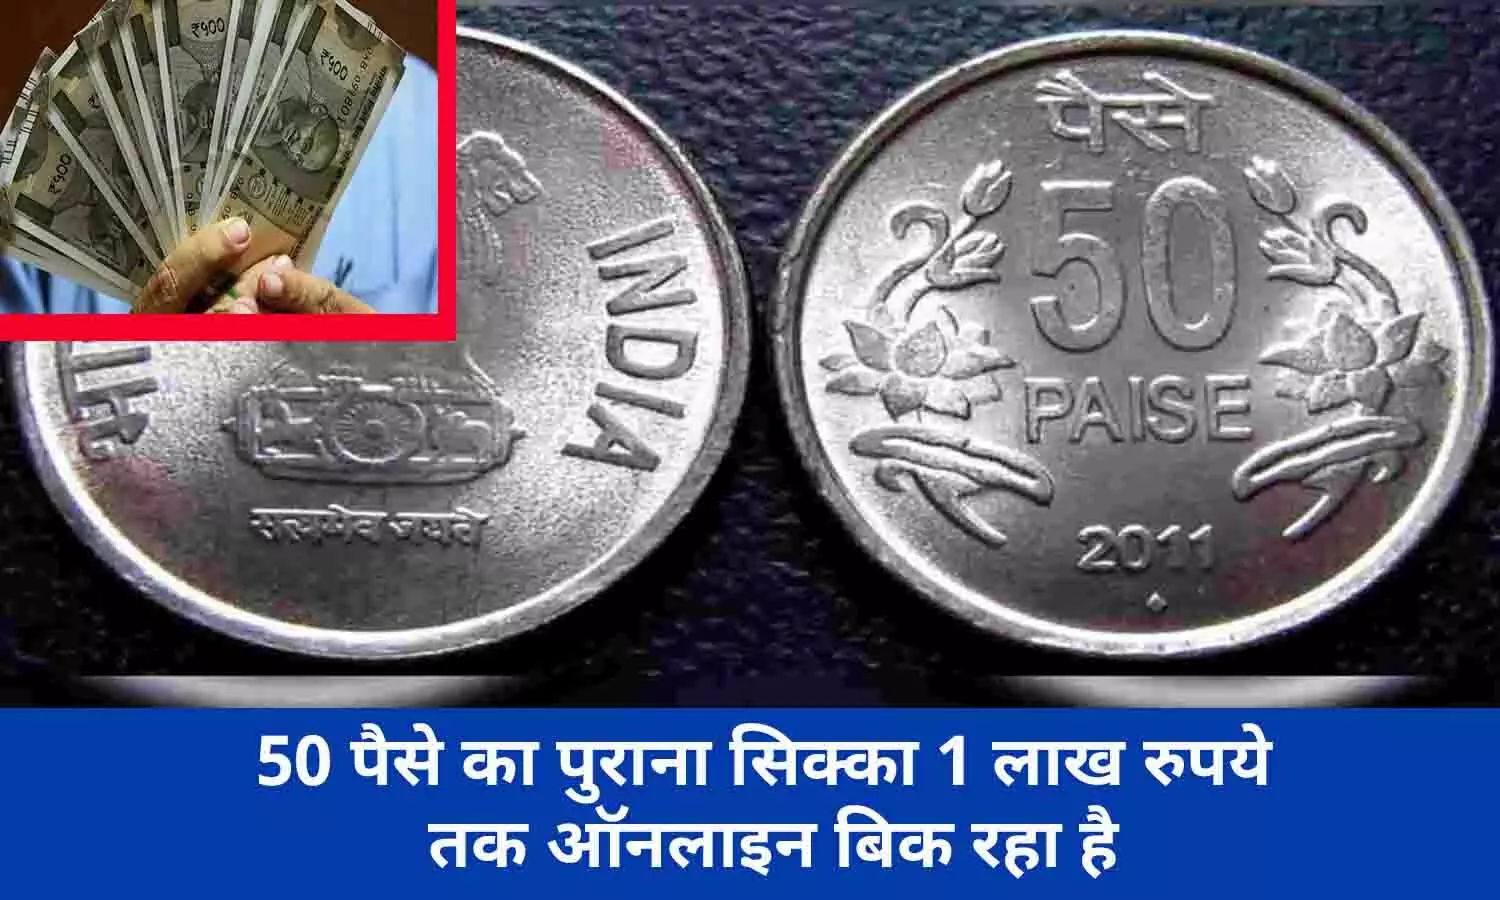 Old Notes And Coin Selling In Hindi 2022: सिर्फ इस 50 पैसे के सिक्के से हर दिन आपके अकॉउंट में आएगा ₹1 लाख रूपए, फटाफट जाने कैसे?